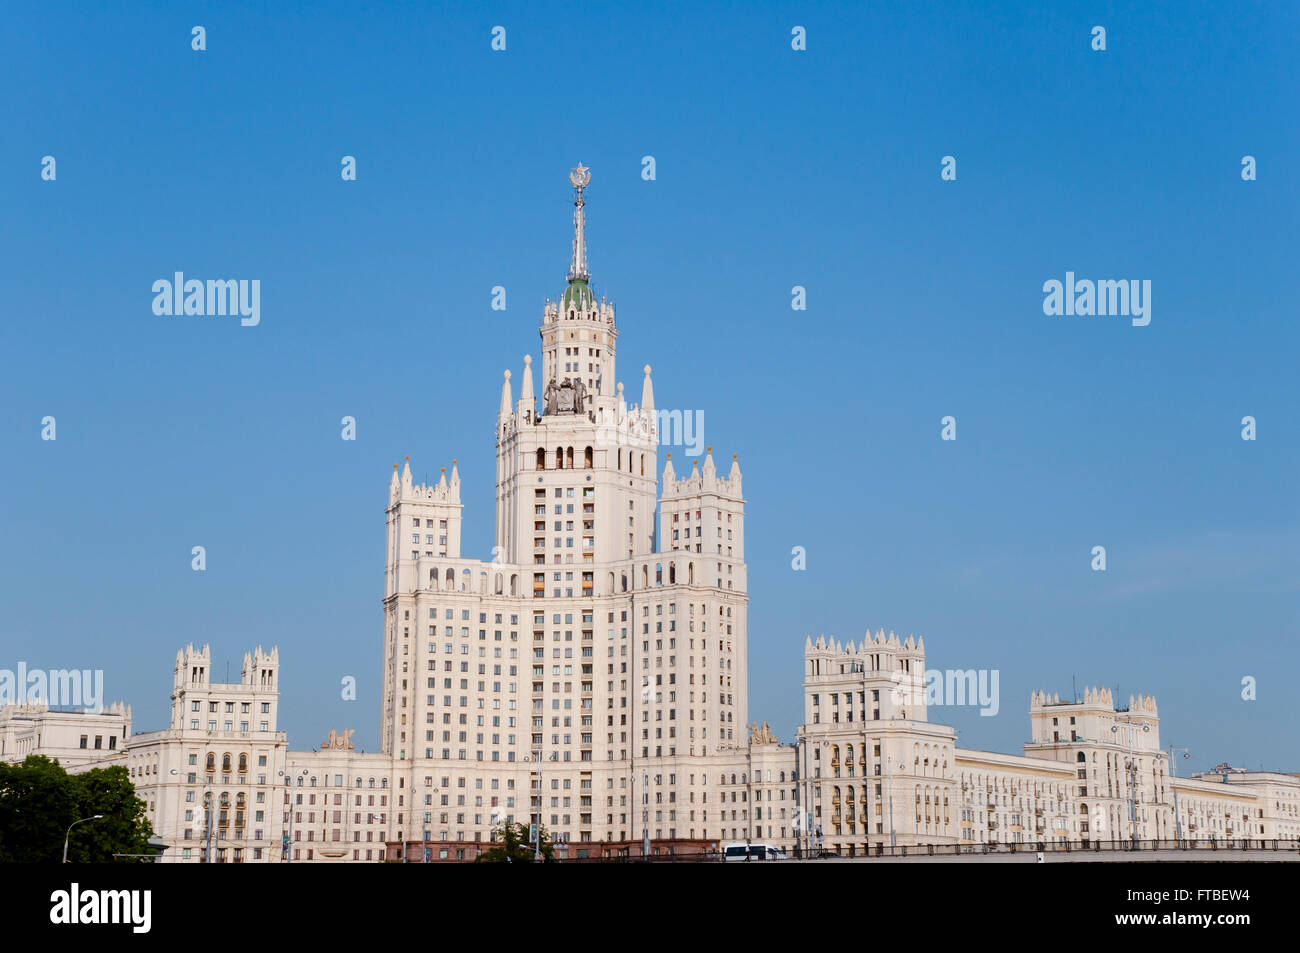 Stalin Skyscraper - Moscow - Russia Stock Photo